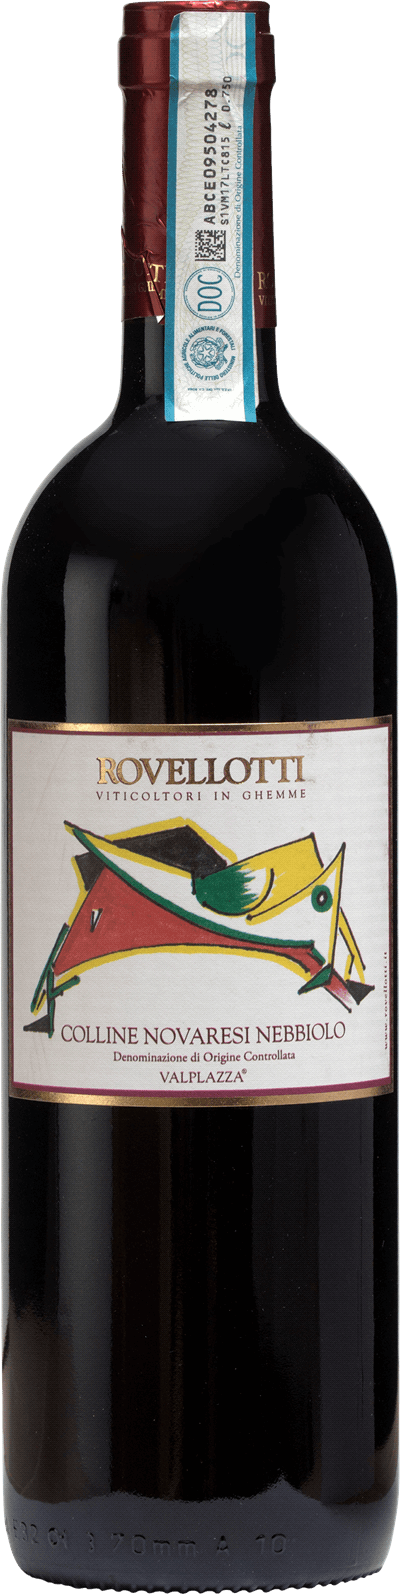 Produktbild för Valplazza Rovellotti